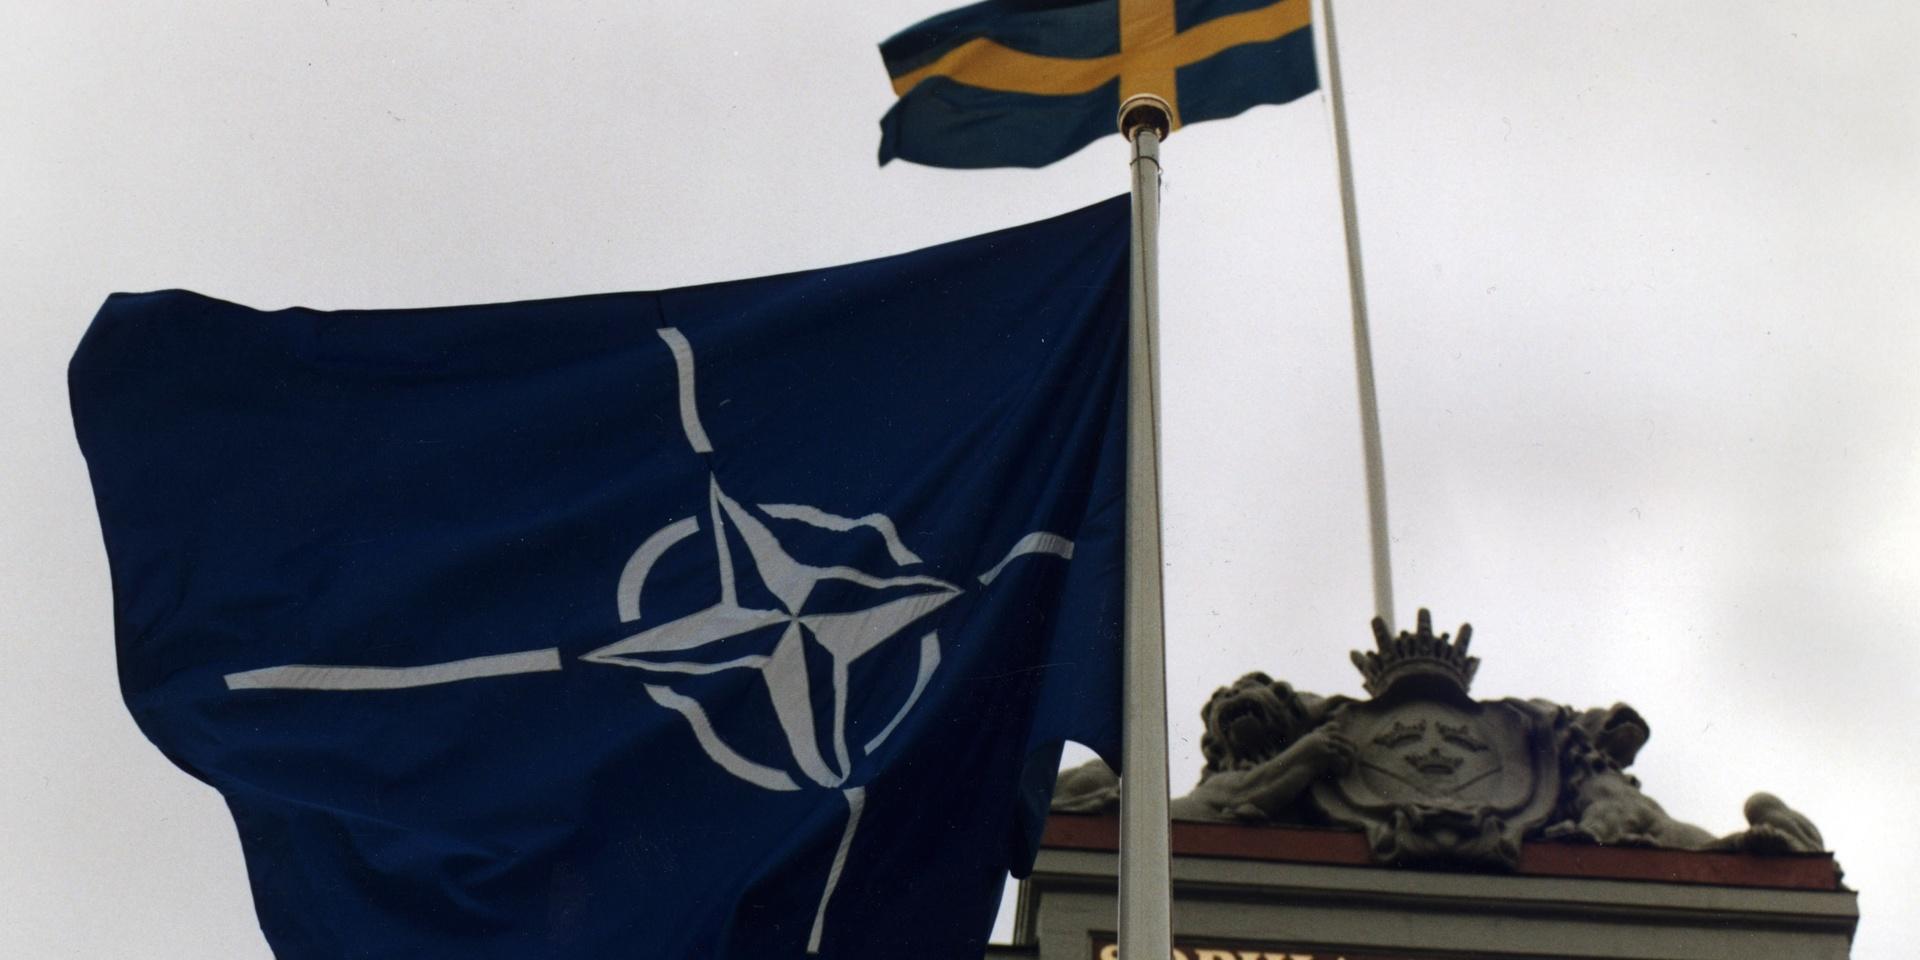 *Allt fler svenskar är positiva till NATO. Nej-sidan har minskat men andelen osäkra har ökat*ARKIVBILD-STOCKHOLM 19961030 - Nato-flaggan vajar tillsammans med svenska flaggan utanför utrikesdepartementet med anledning av Javier Solanas besök i Sverige som generalsekreterare för NATO Foto: Hans T Dahlskog  Kod: 1003 COPYRIGHT SCANPIX SWEDEN